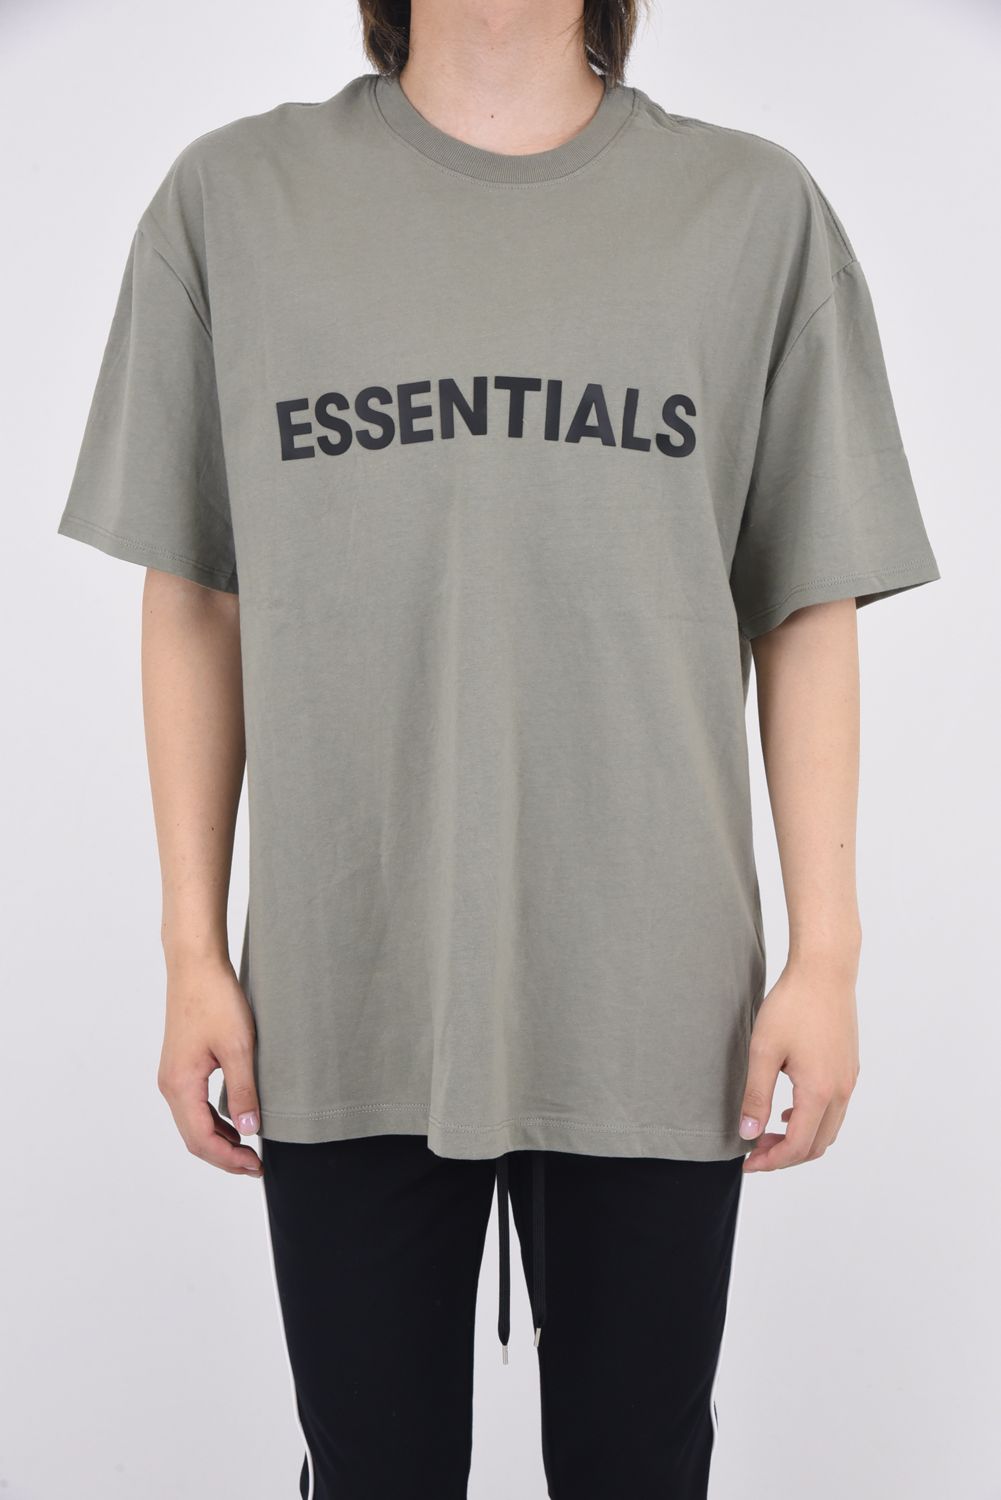 FOG エッセンシャルズ フロント カーキロゴ 半袖 Tシャツ カーキ XL